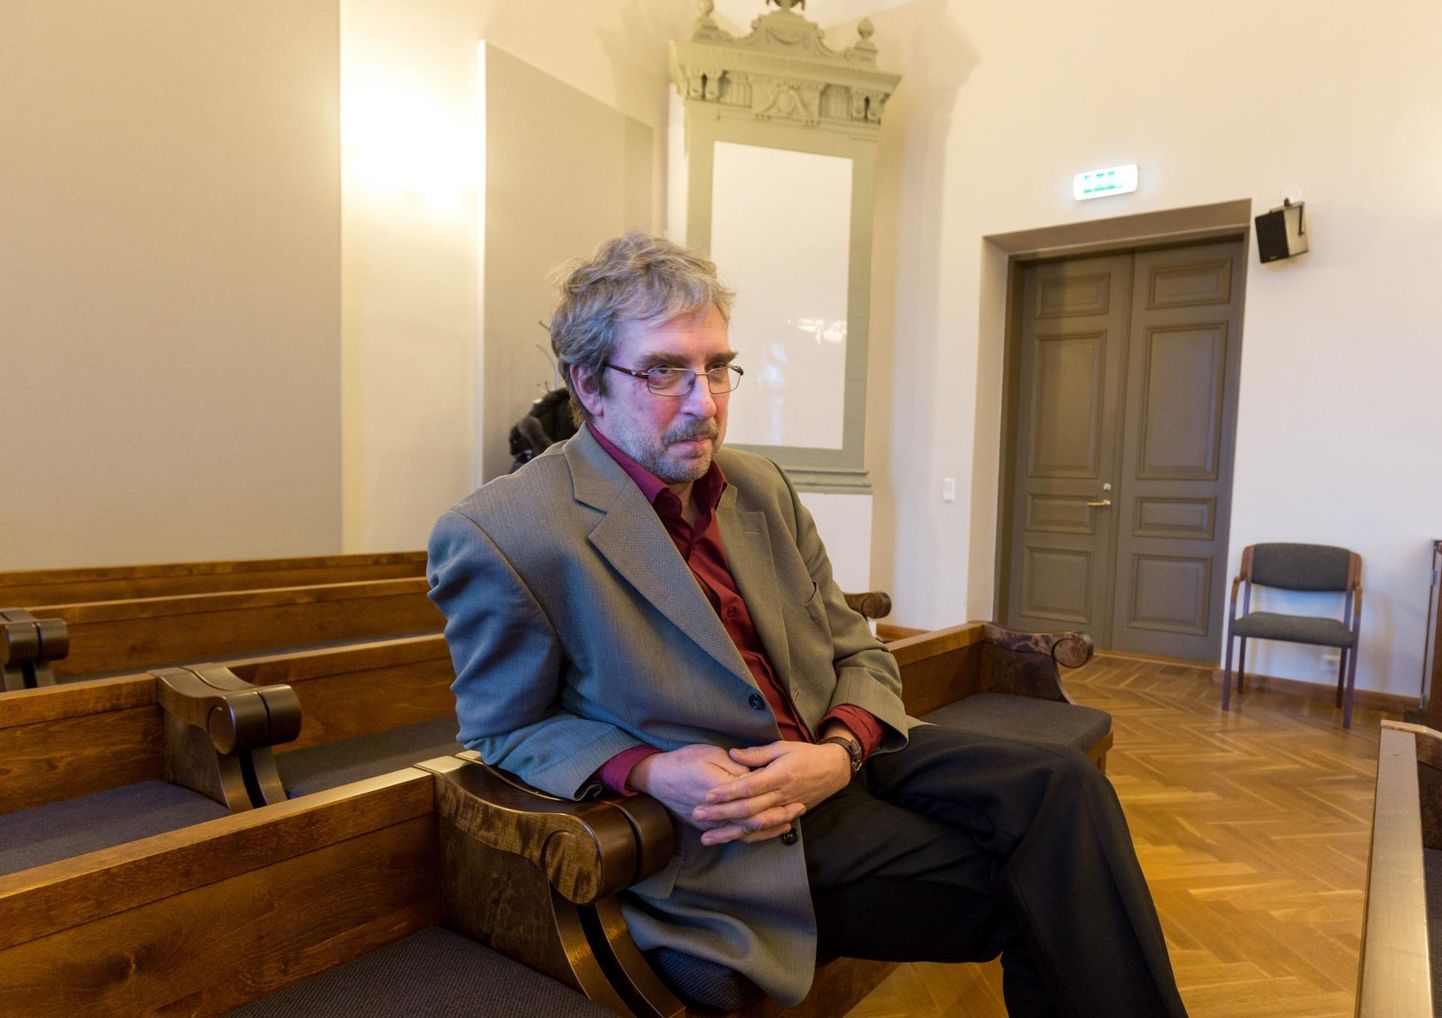 Kohtus omastamises ja korruptsioonis süüdi jäänud endine Kőpu vallavanem Tőnu Kiviloo peab pärast aastaid kestnud kohtuteed lõpuks vangi minema.